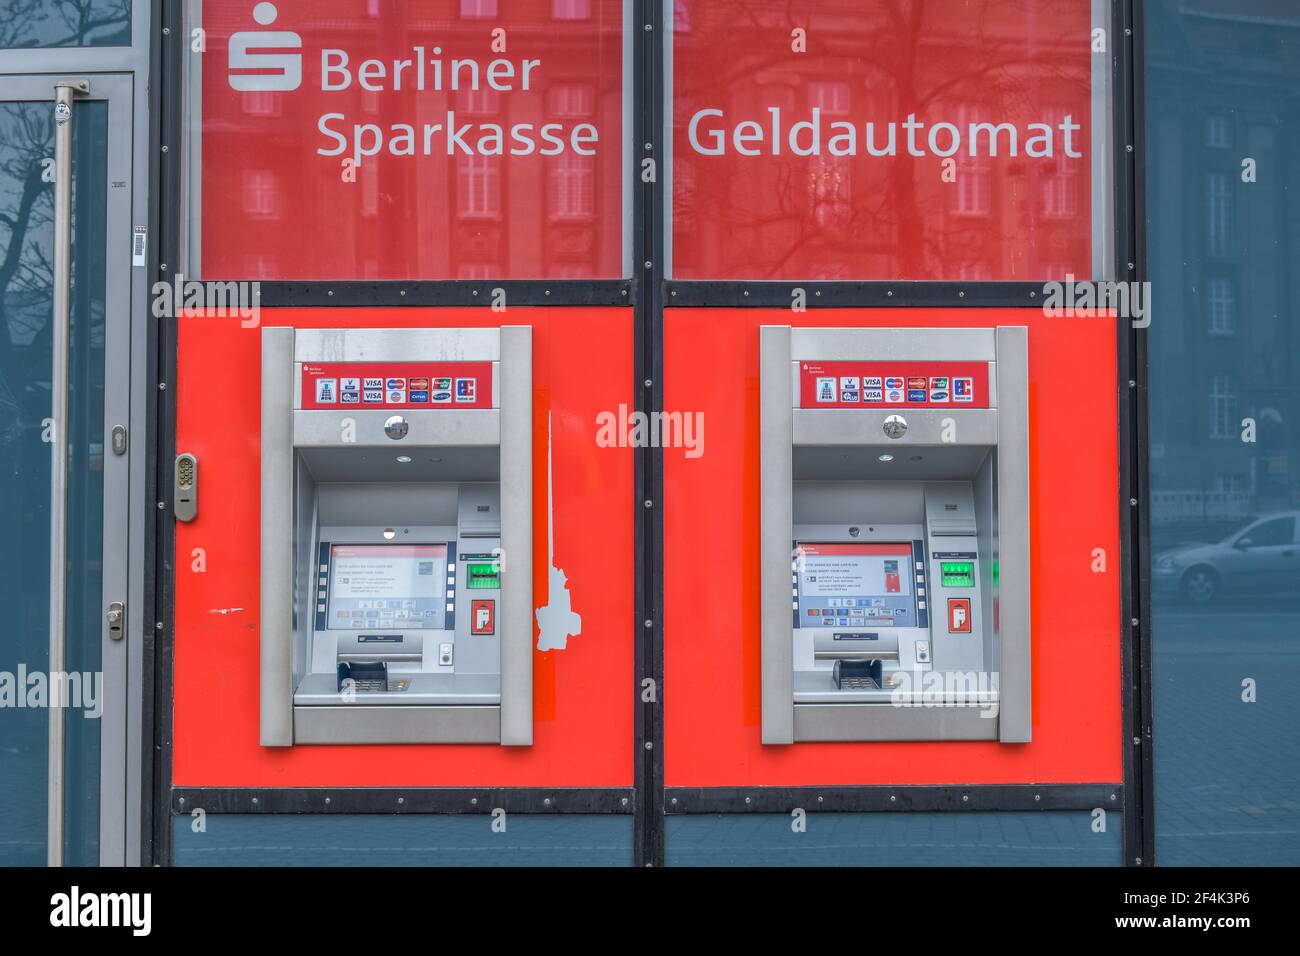 Geldautomat, Berliner Sparkasse Foto de stock